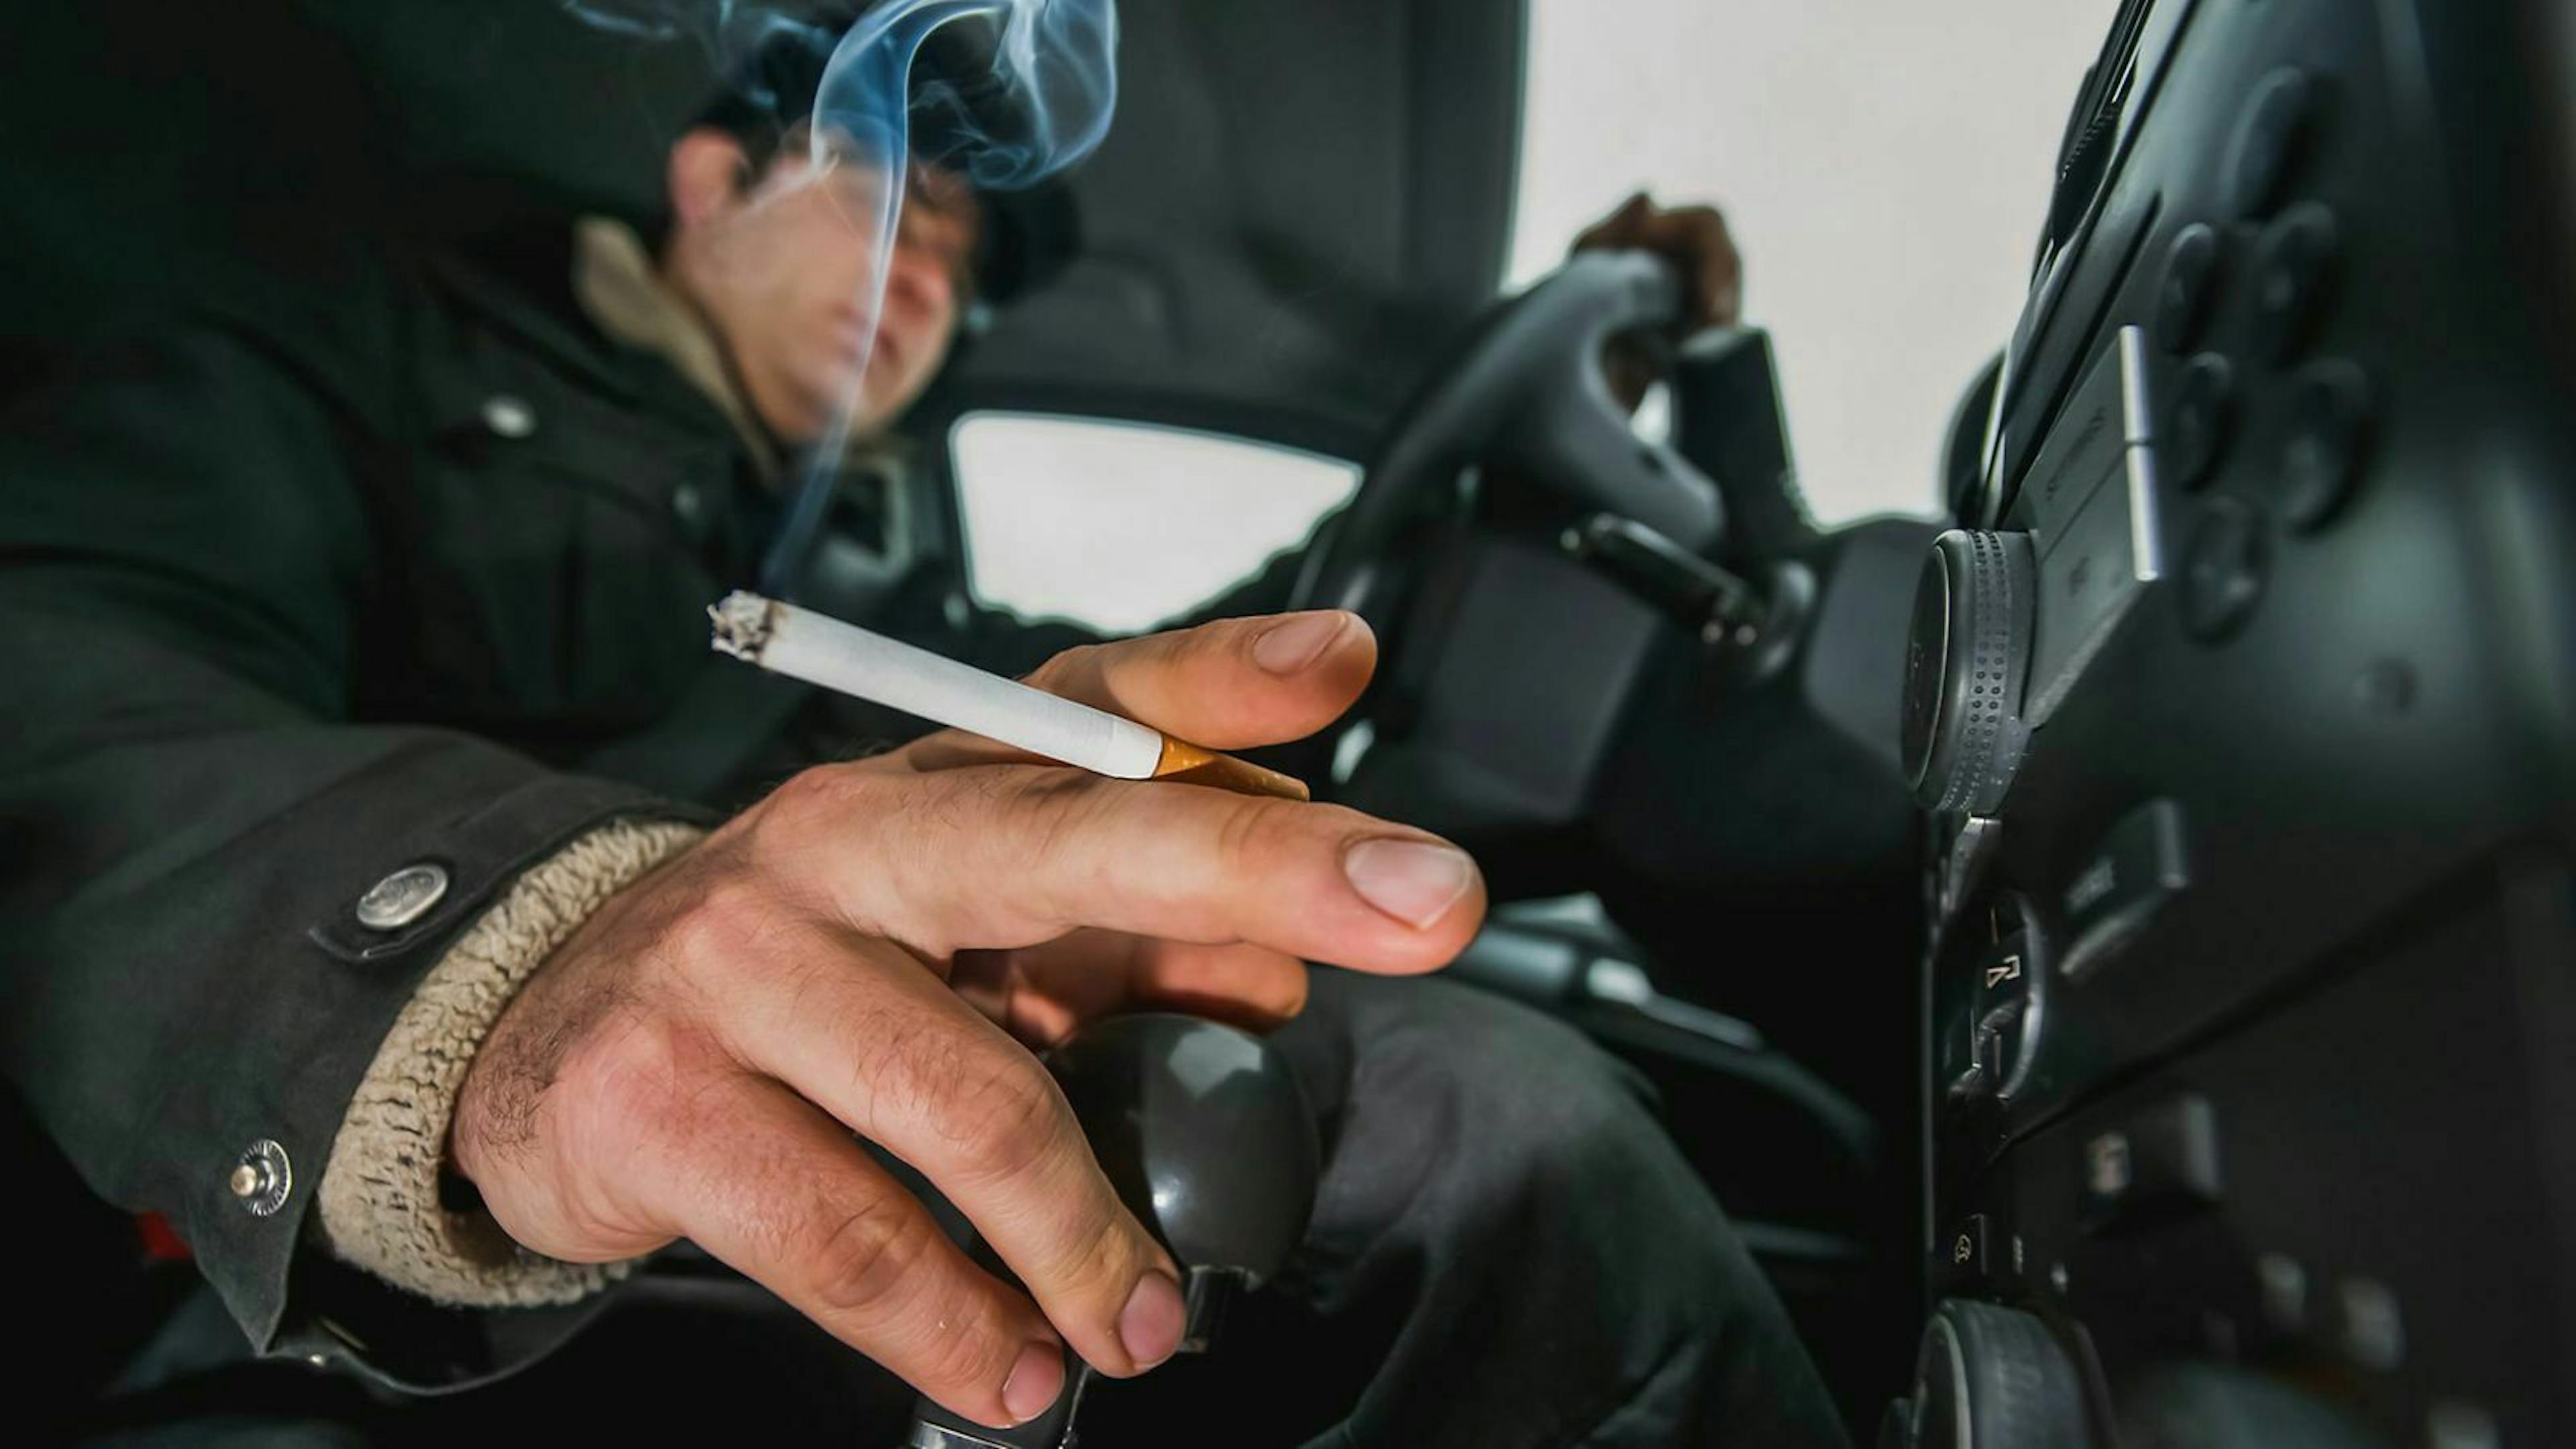 Der Fahrer eines Autos hält eine Zigarette während seine Hand auf dem Schaltknüppel ruht.